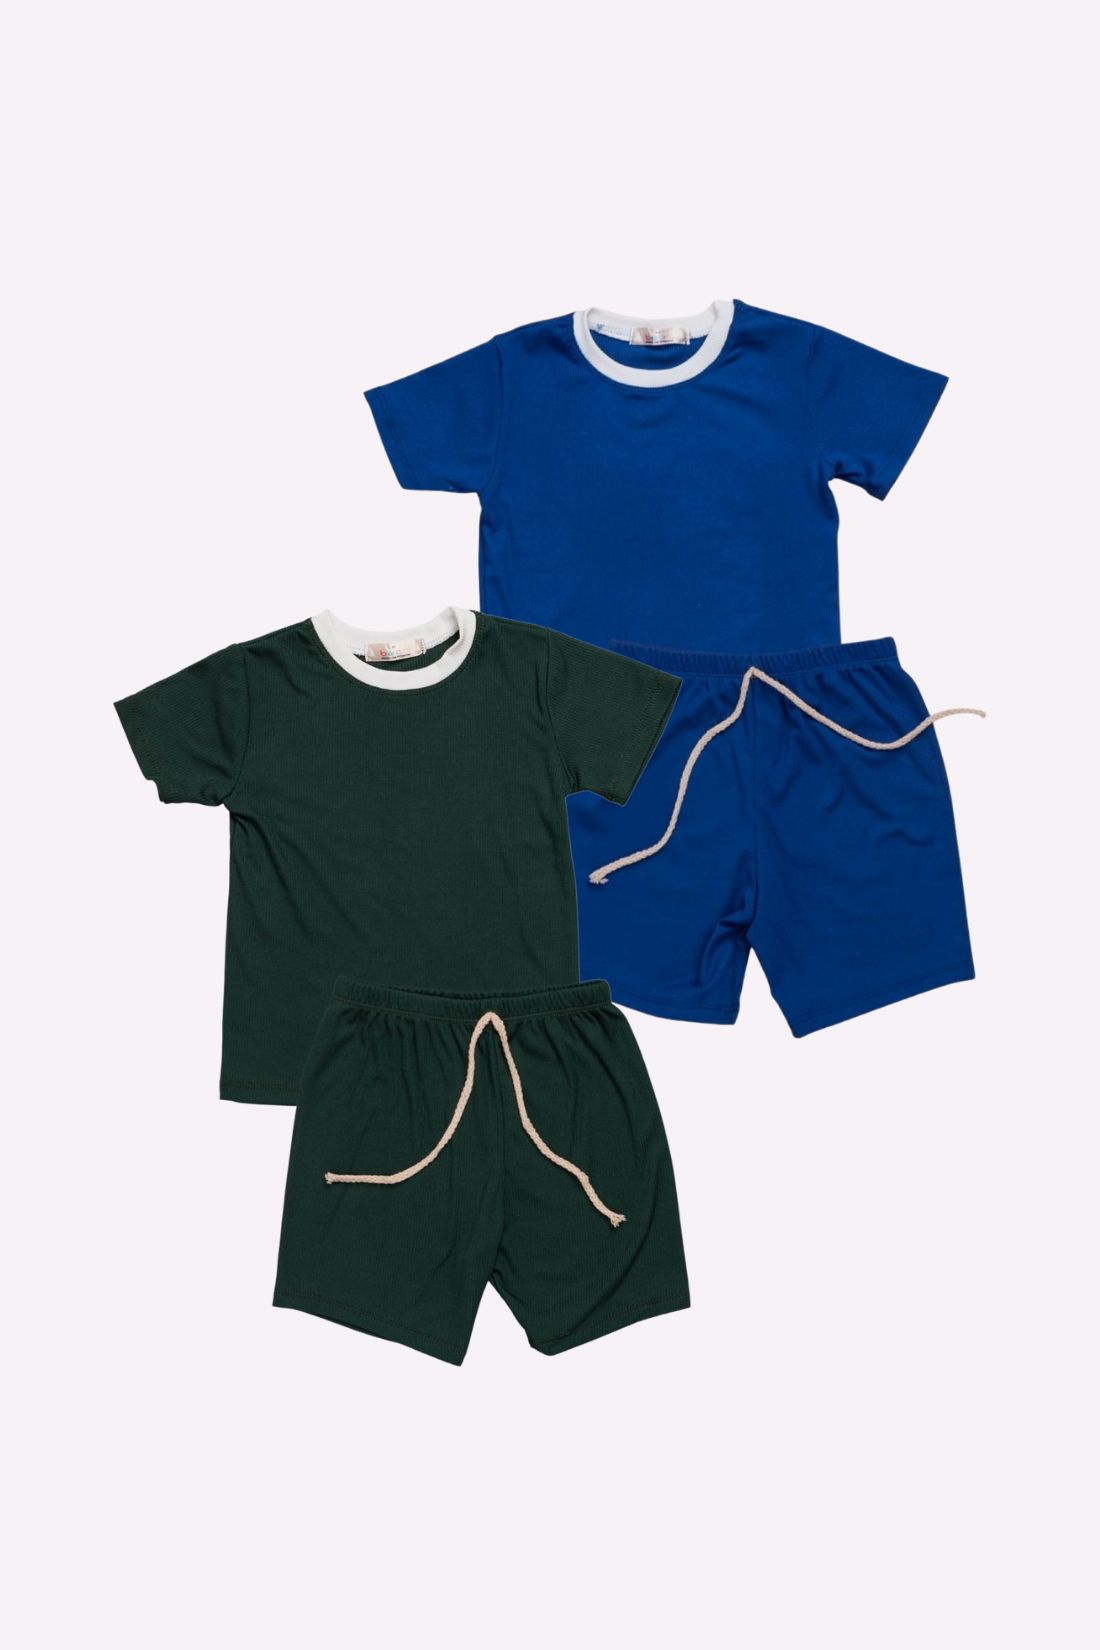 Set of 2 Shorts and Shirt Emerald Royal Blue